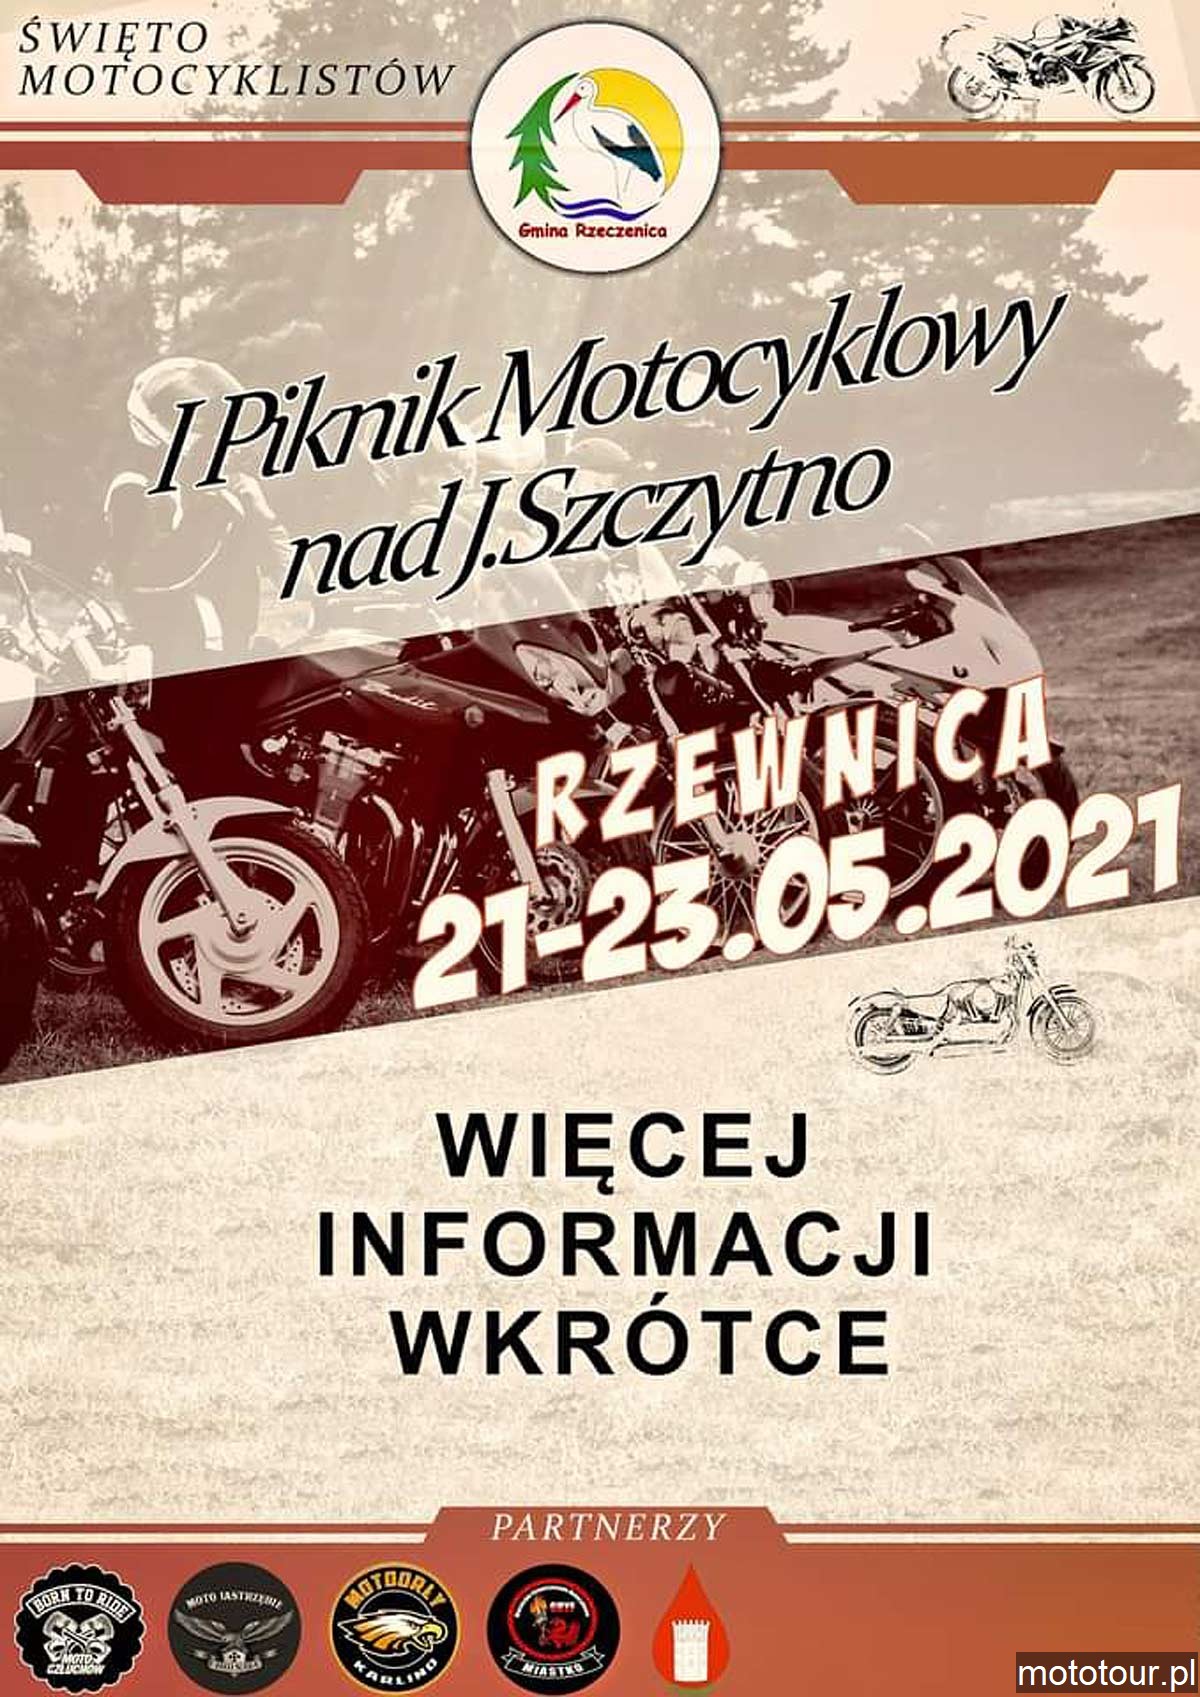 I Piknik Motocyklowy nad J. Szczytno - Moto Człuchów